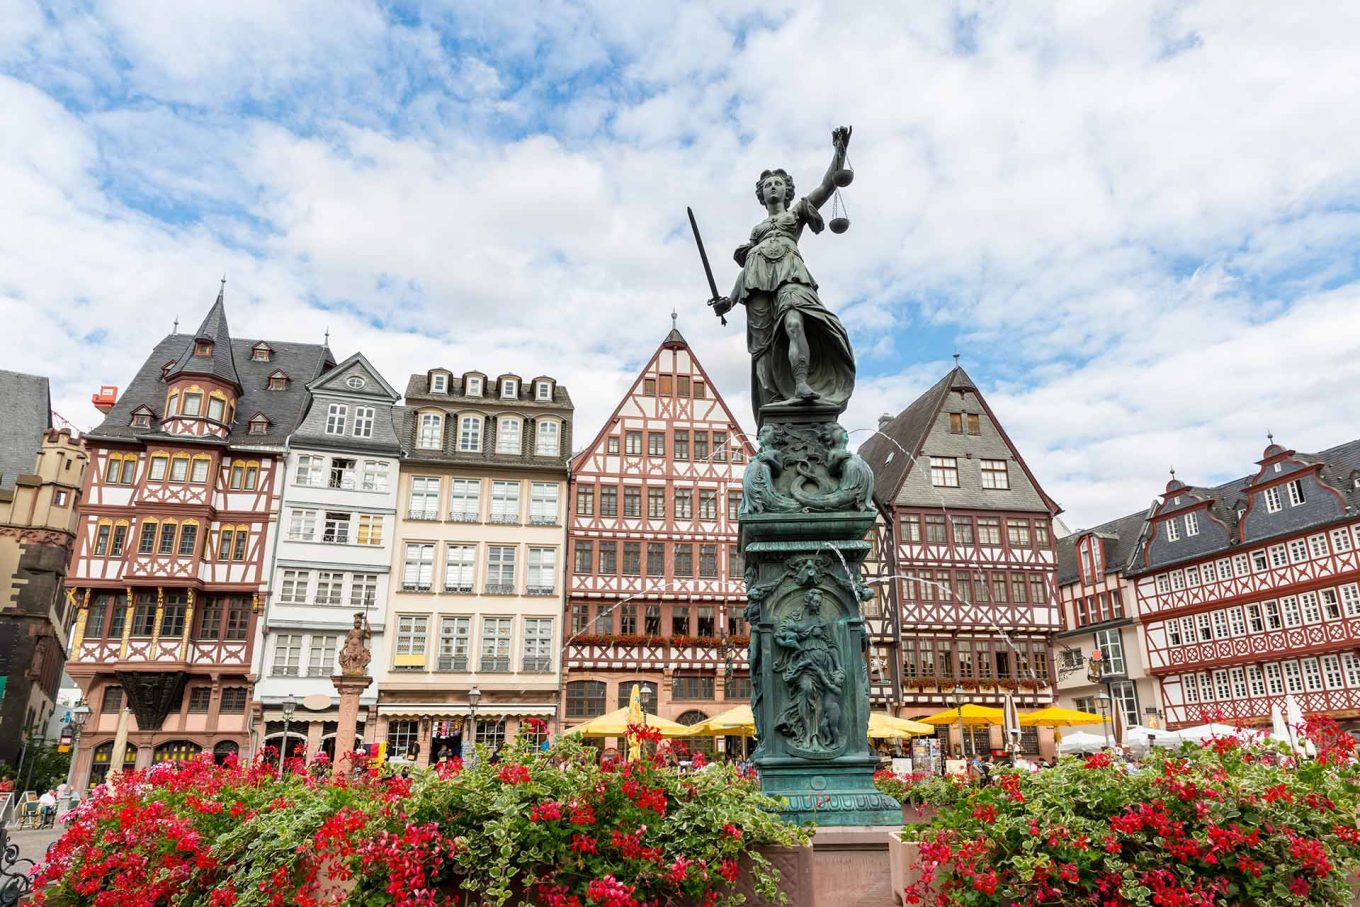 Imagem: Praça Römer, a praça mais antiga da cidade de Frankfurt. Foto: vichie81/shutterstock.com.